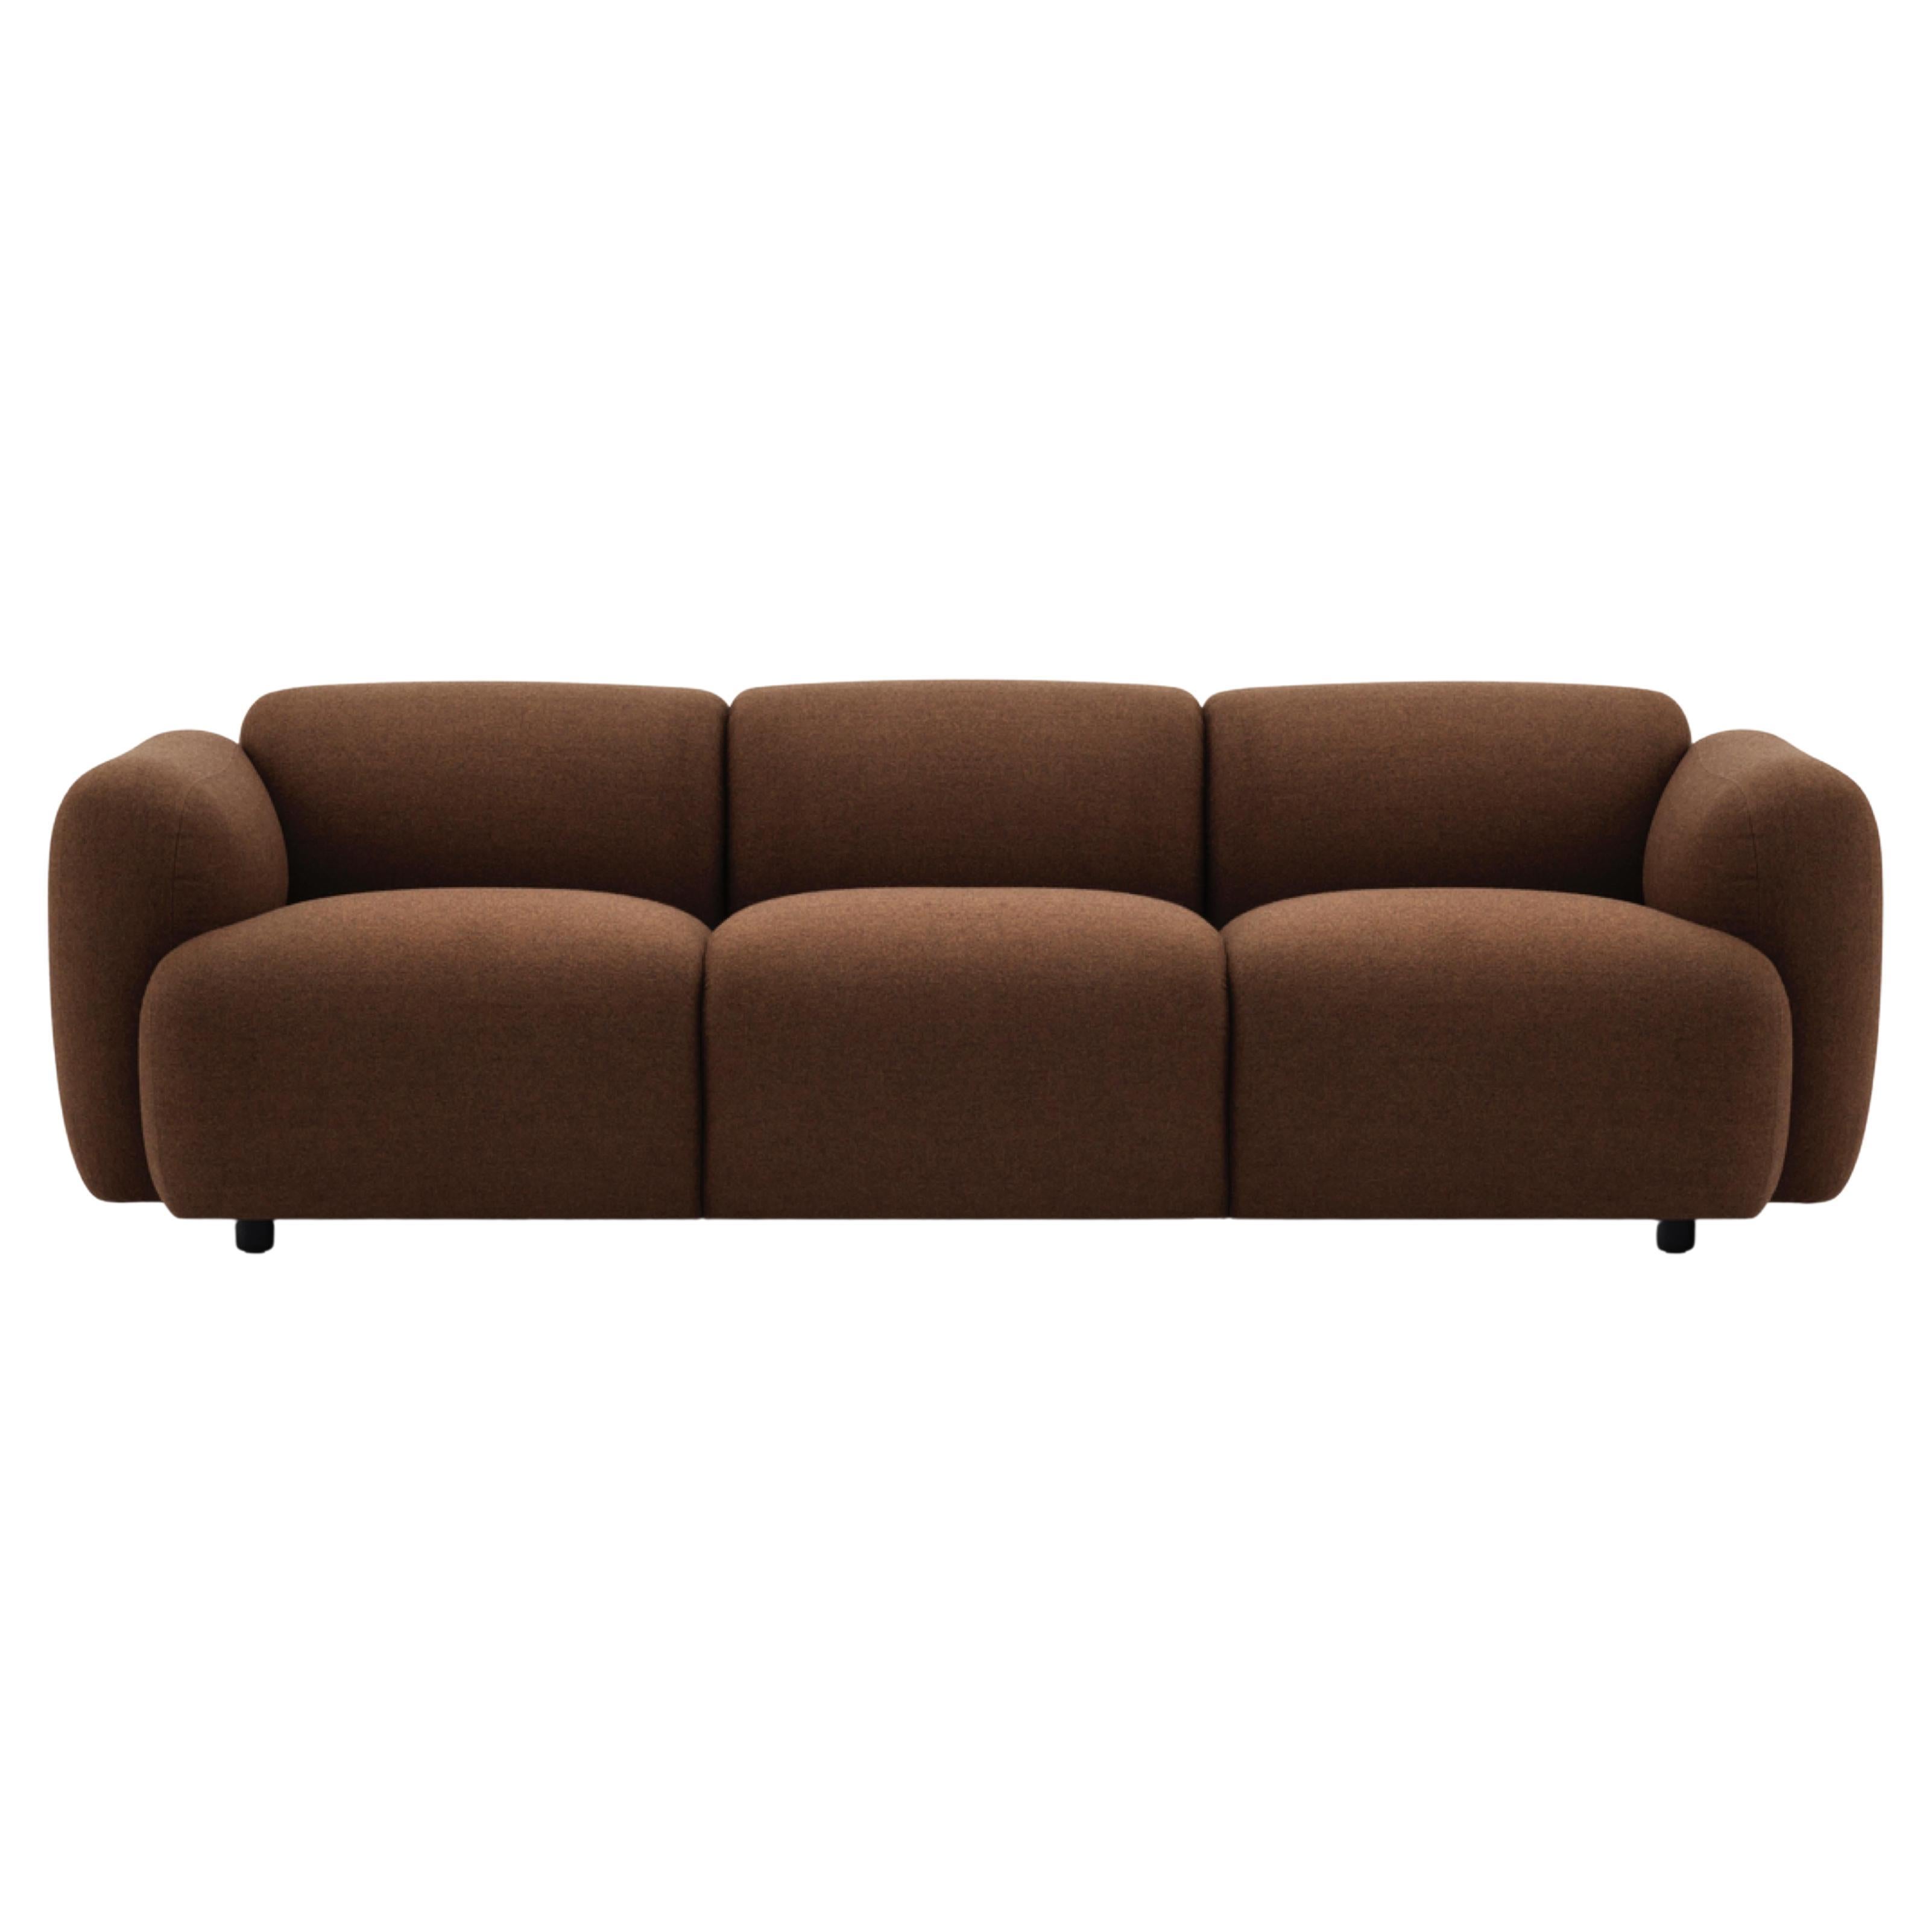 
Swell est une collection minimaliste de meubles pour le salon, avec un côté ludique et léger. Les silhouettes douces et incurvées donnent aux meubles un aspect accueillant et assurent un confort d'assise fantastique. 
Le nom Swell est une référence